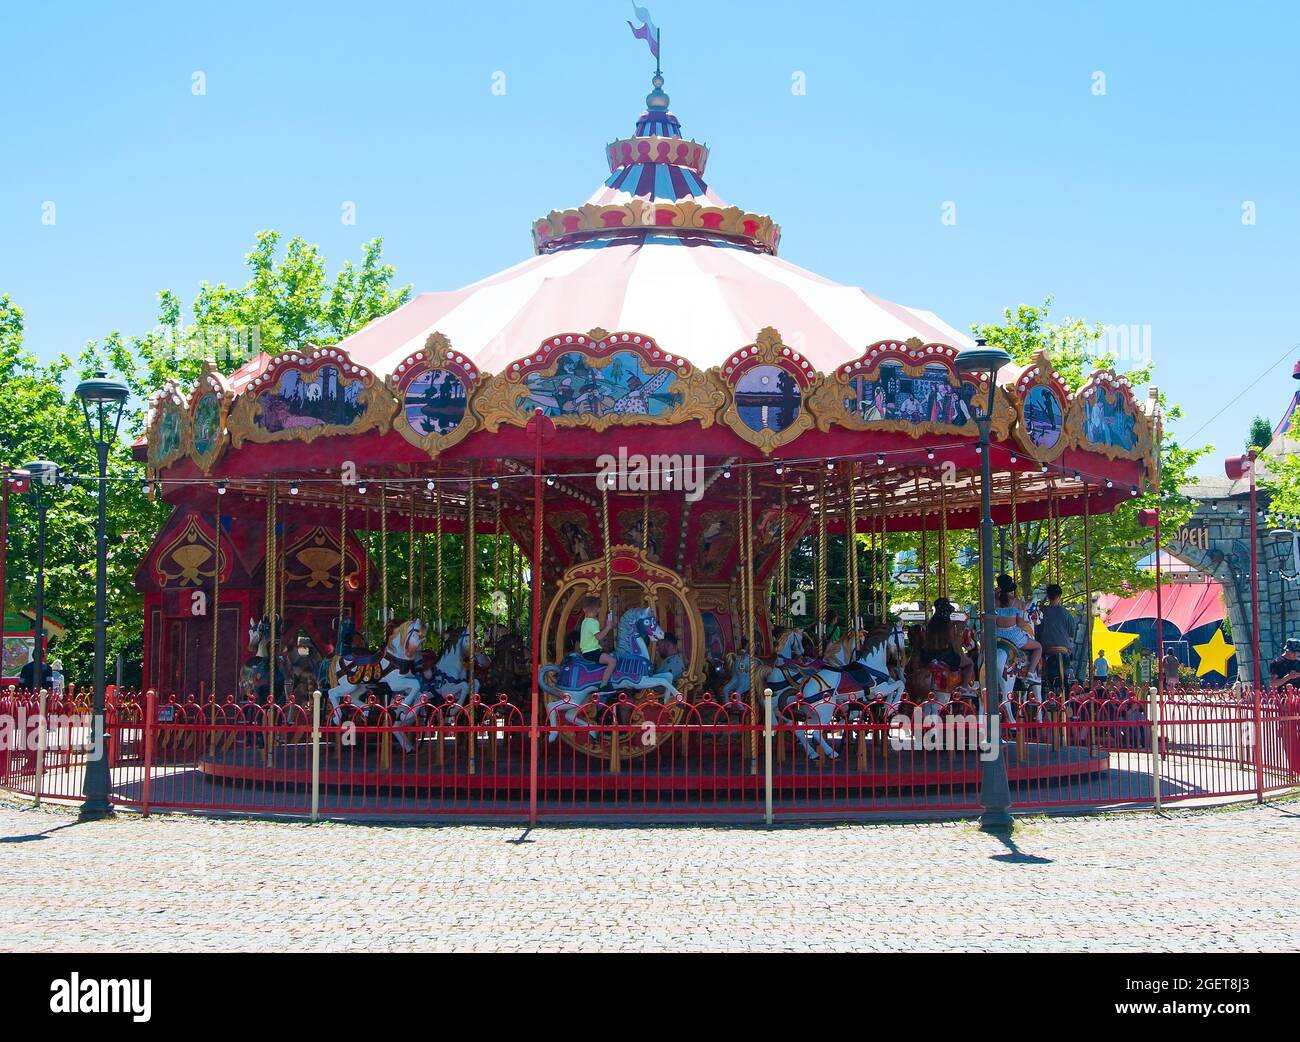 Karusel loshadi i karety v tematicheskom Sochi parke. Stock Photo